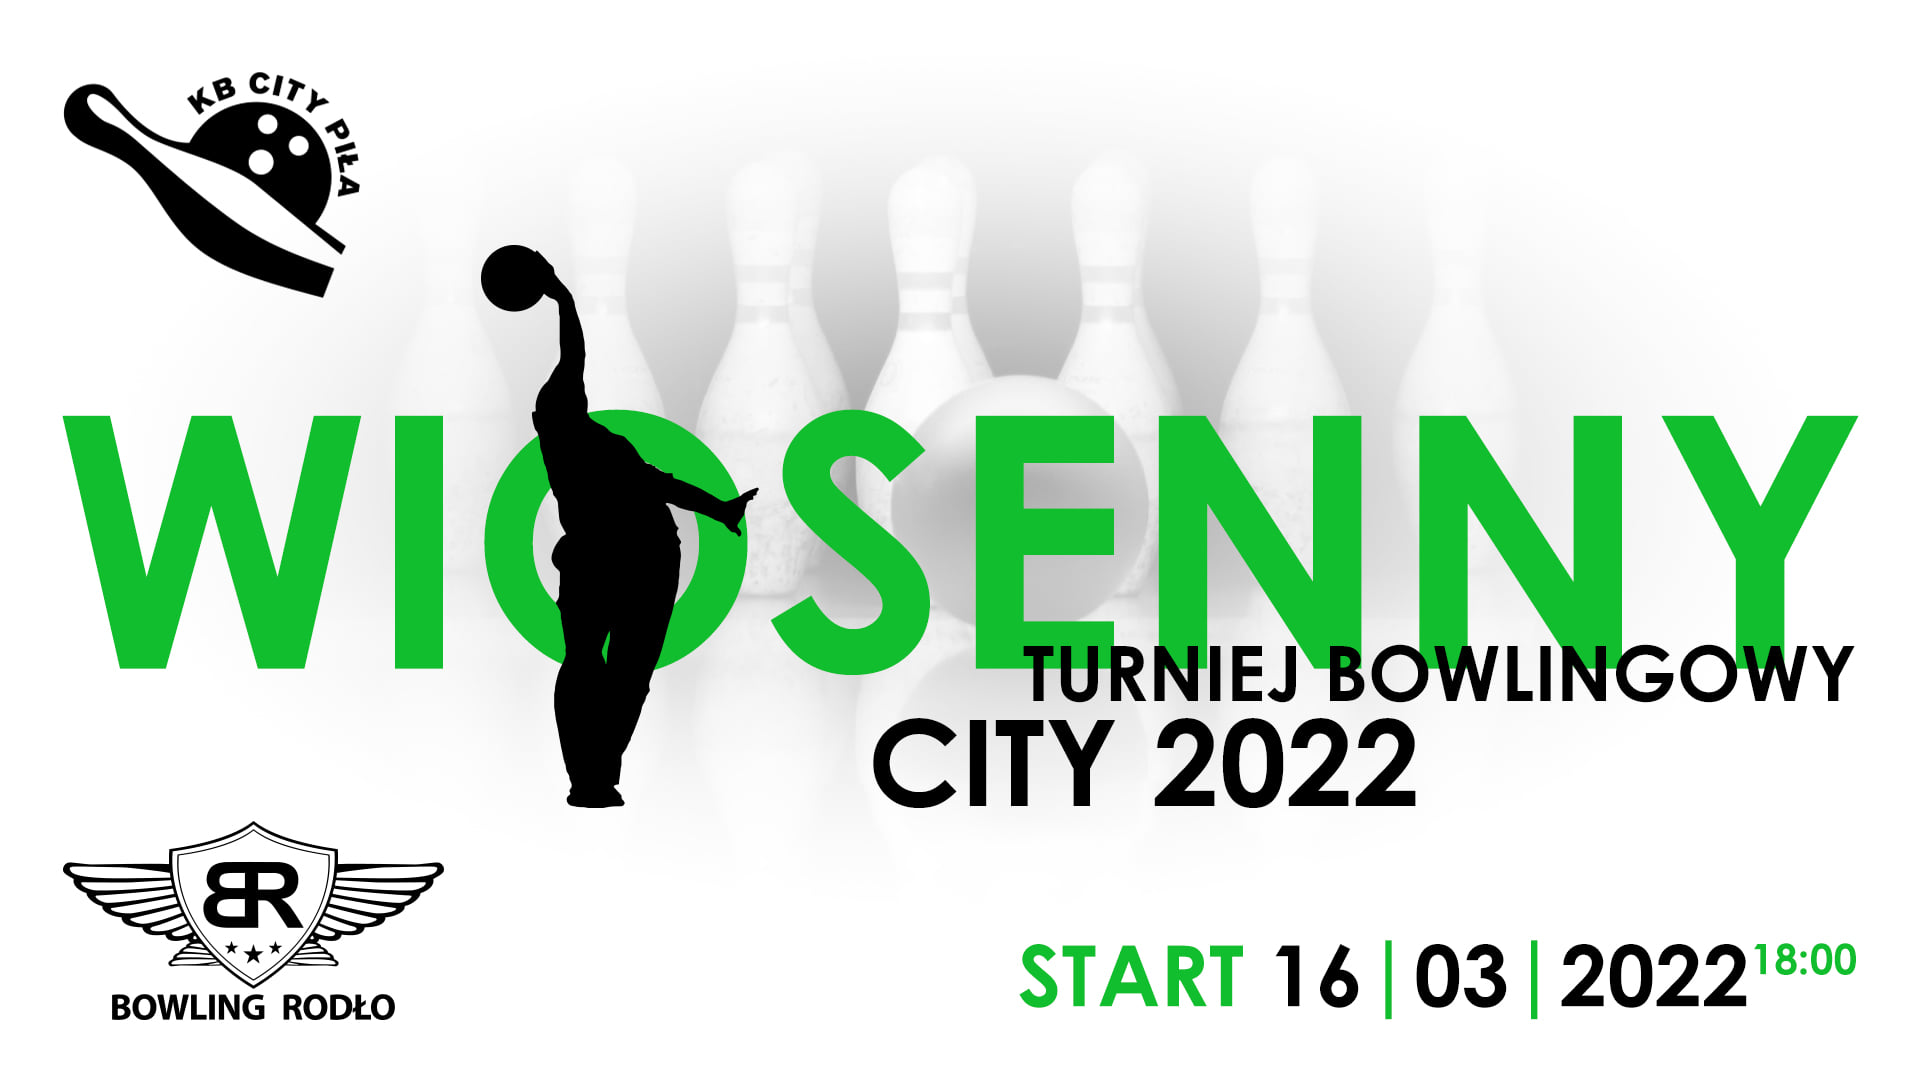 Wiosenny Turniej Bowlingowy - CITY 2022